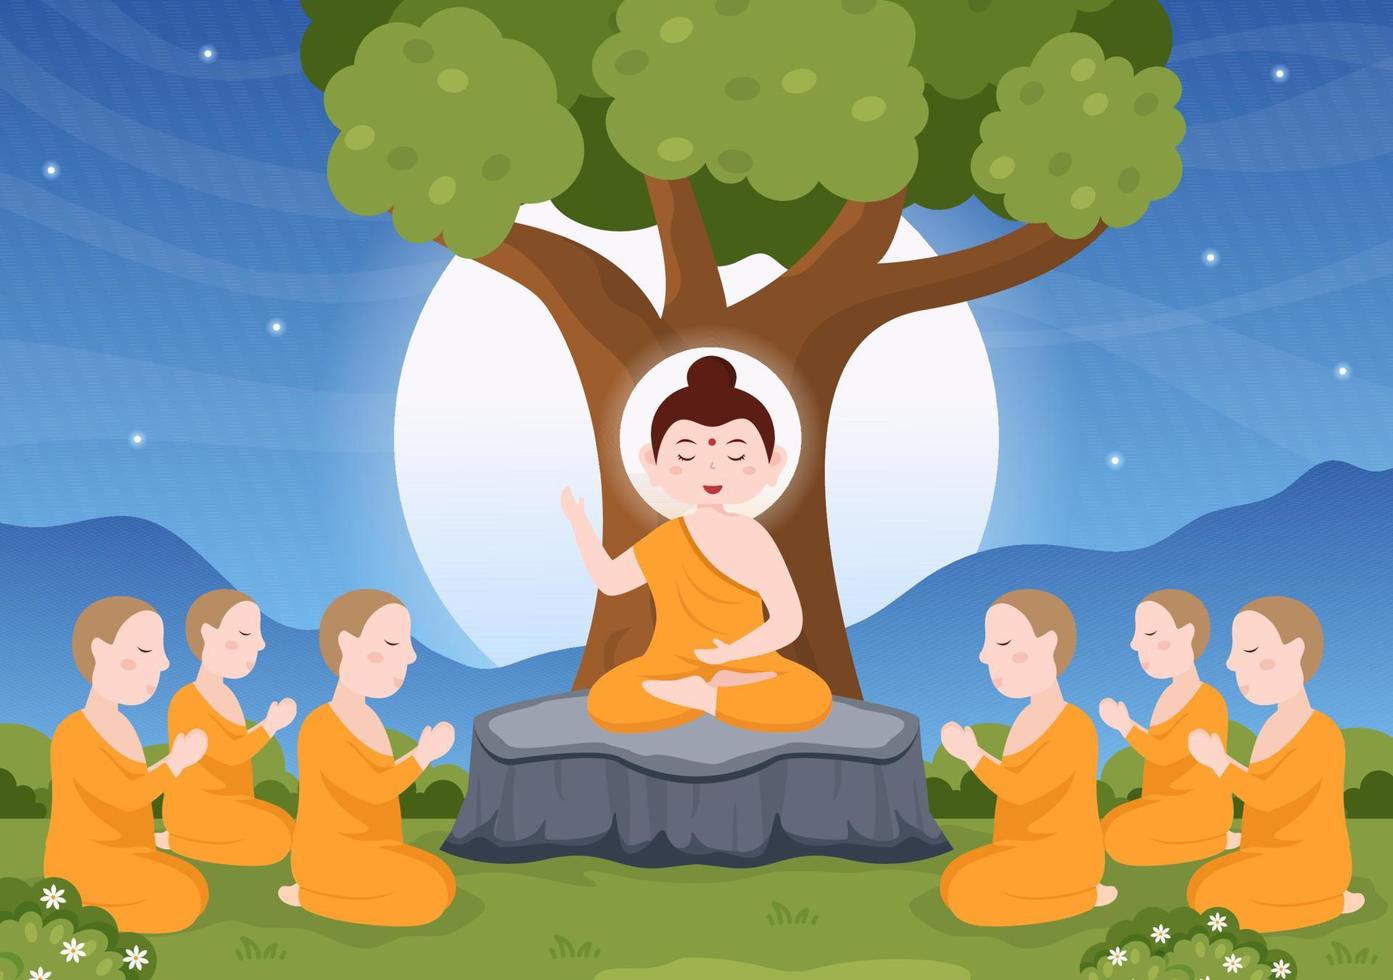 modèle de jour heureux makha bucha illustration plate de dessin animé dessiné à la main bouddha assis dans une fleur de lotus sous l'arbre bodhi la nuit entouré de moine vecteur